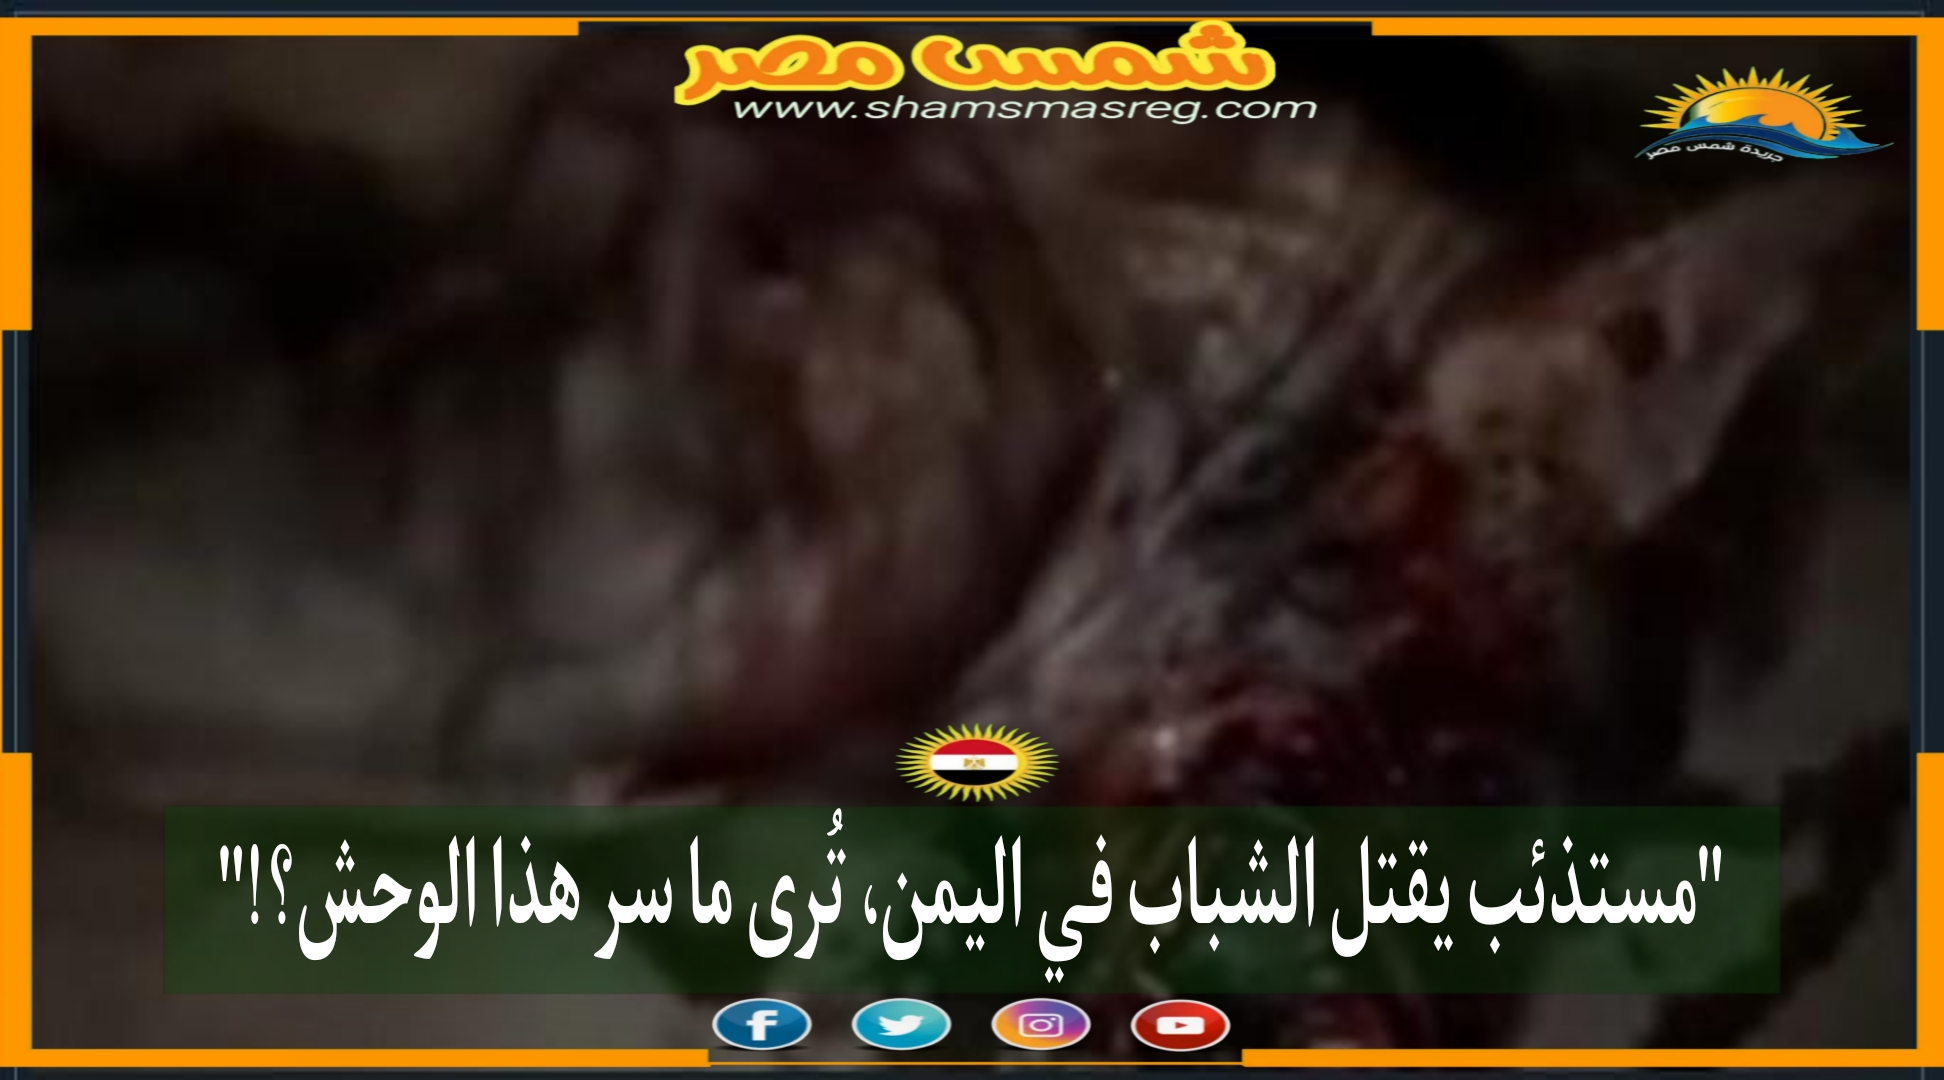 مستذئب" يقتل الشباب في اليمن.. ترى ما سر هذا الوحش؟